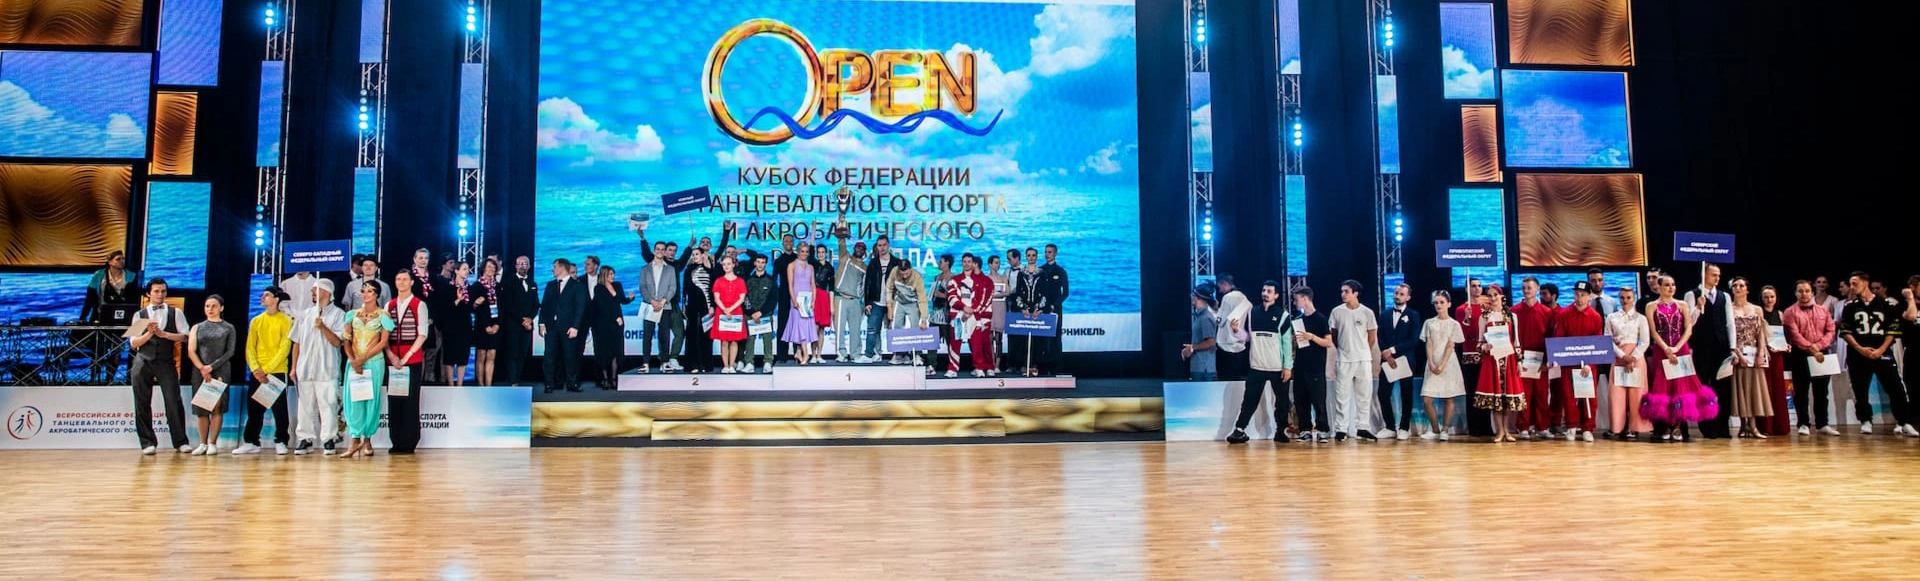 Sochi Open 2021. Соревнования по танцевальному спорту